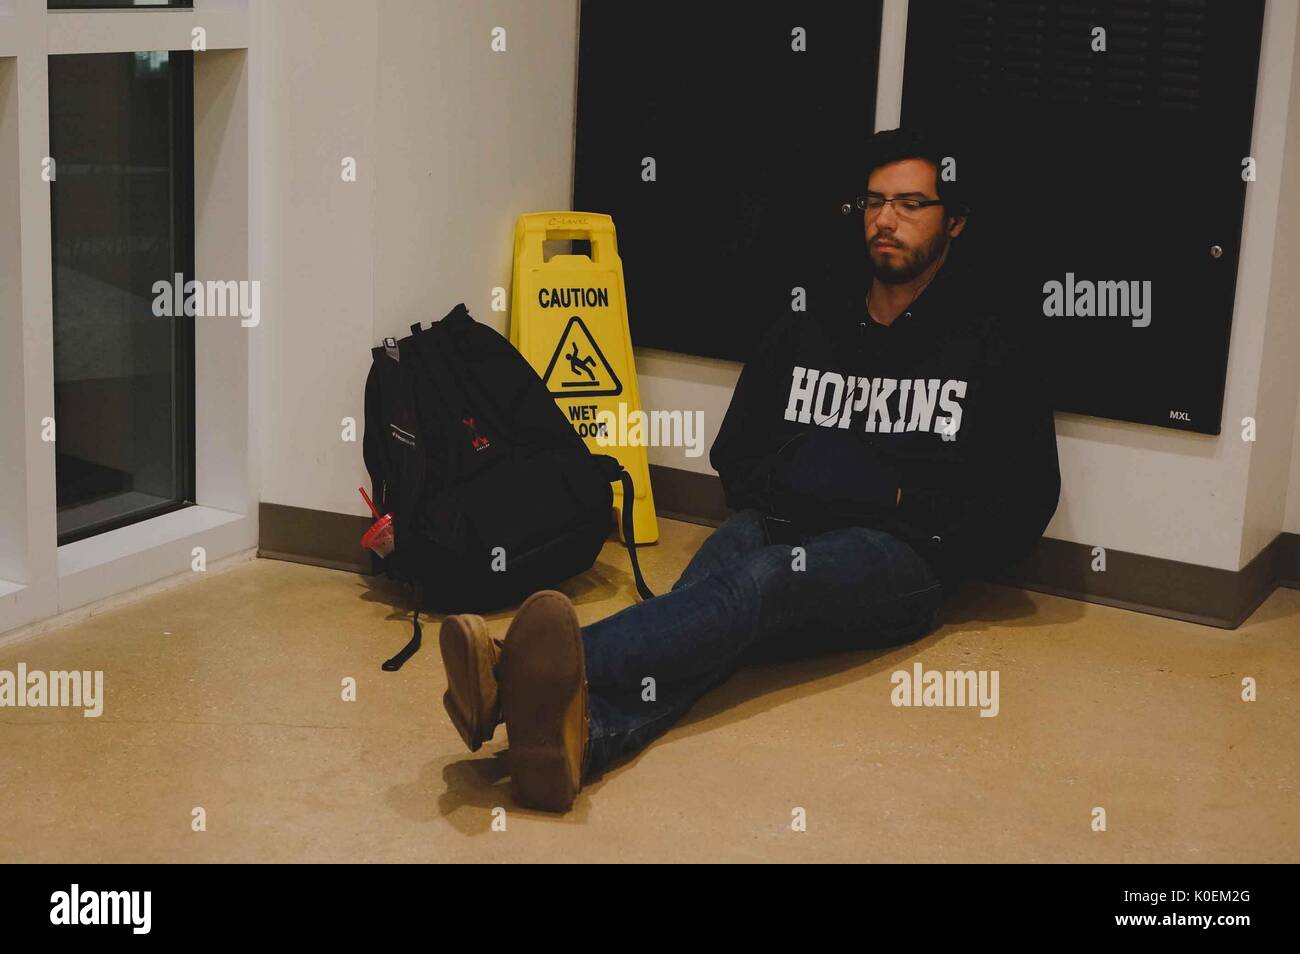 Uno studente di college prendendo un pisolino mentre posa contro una parete in brody learning commons, il suo zaino e un segnale di avvertimento pavimento bagnato sedersi accanto a lui, 2014. cortesia eric chen. Foto Stock